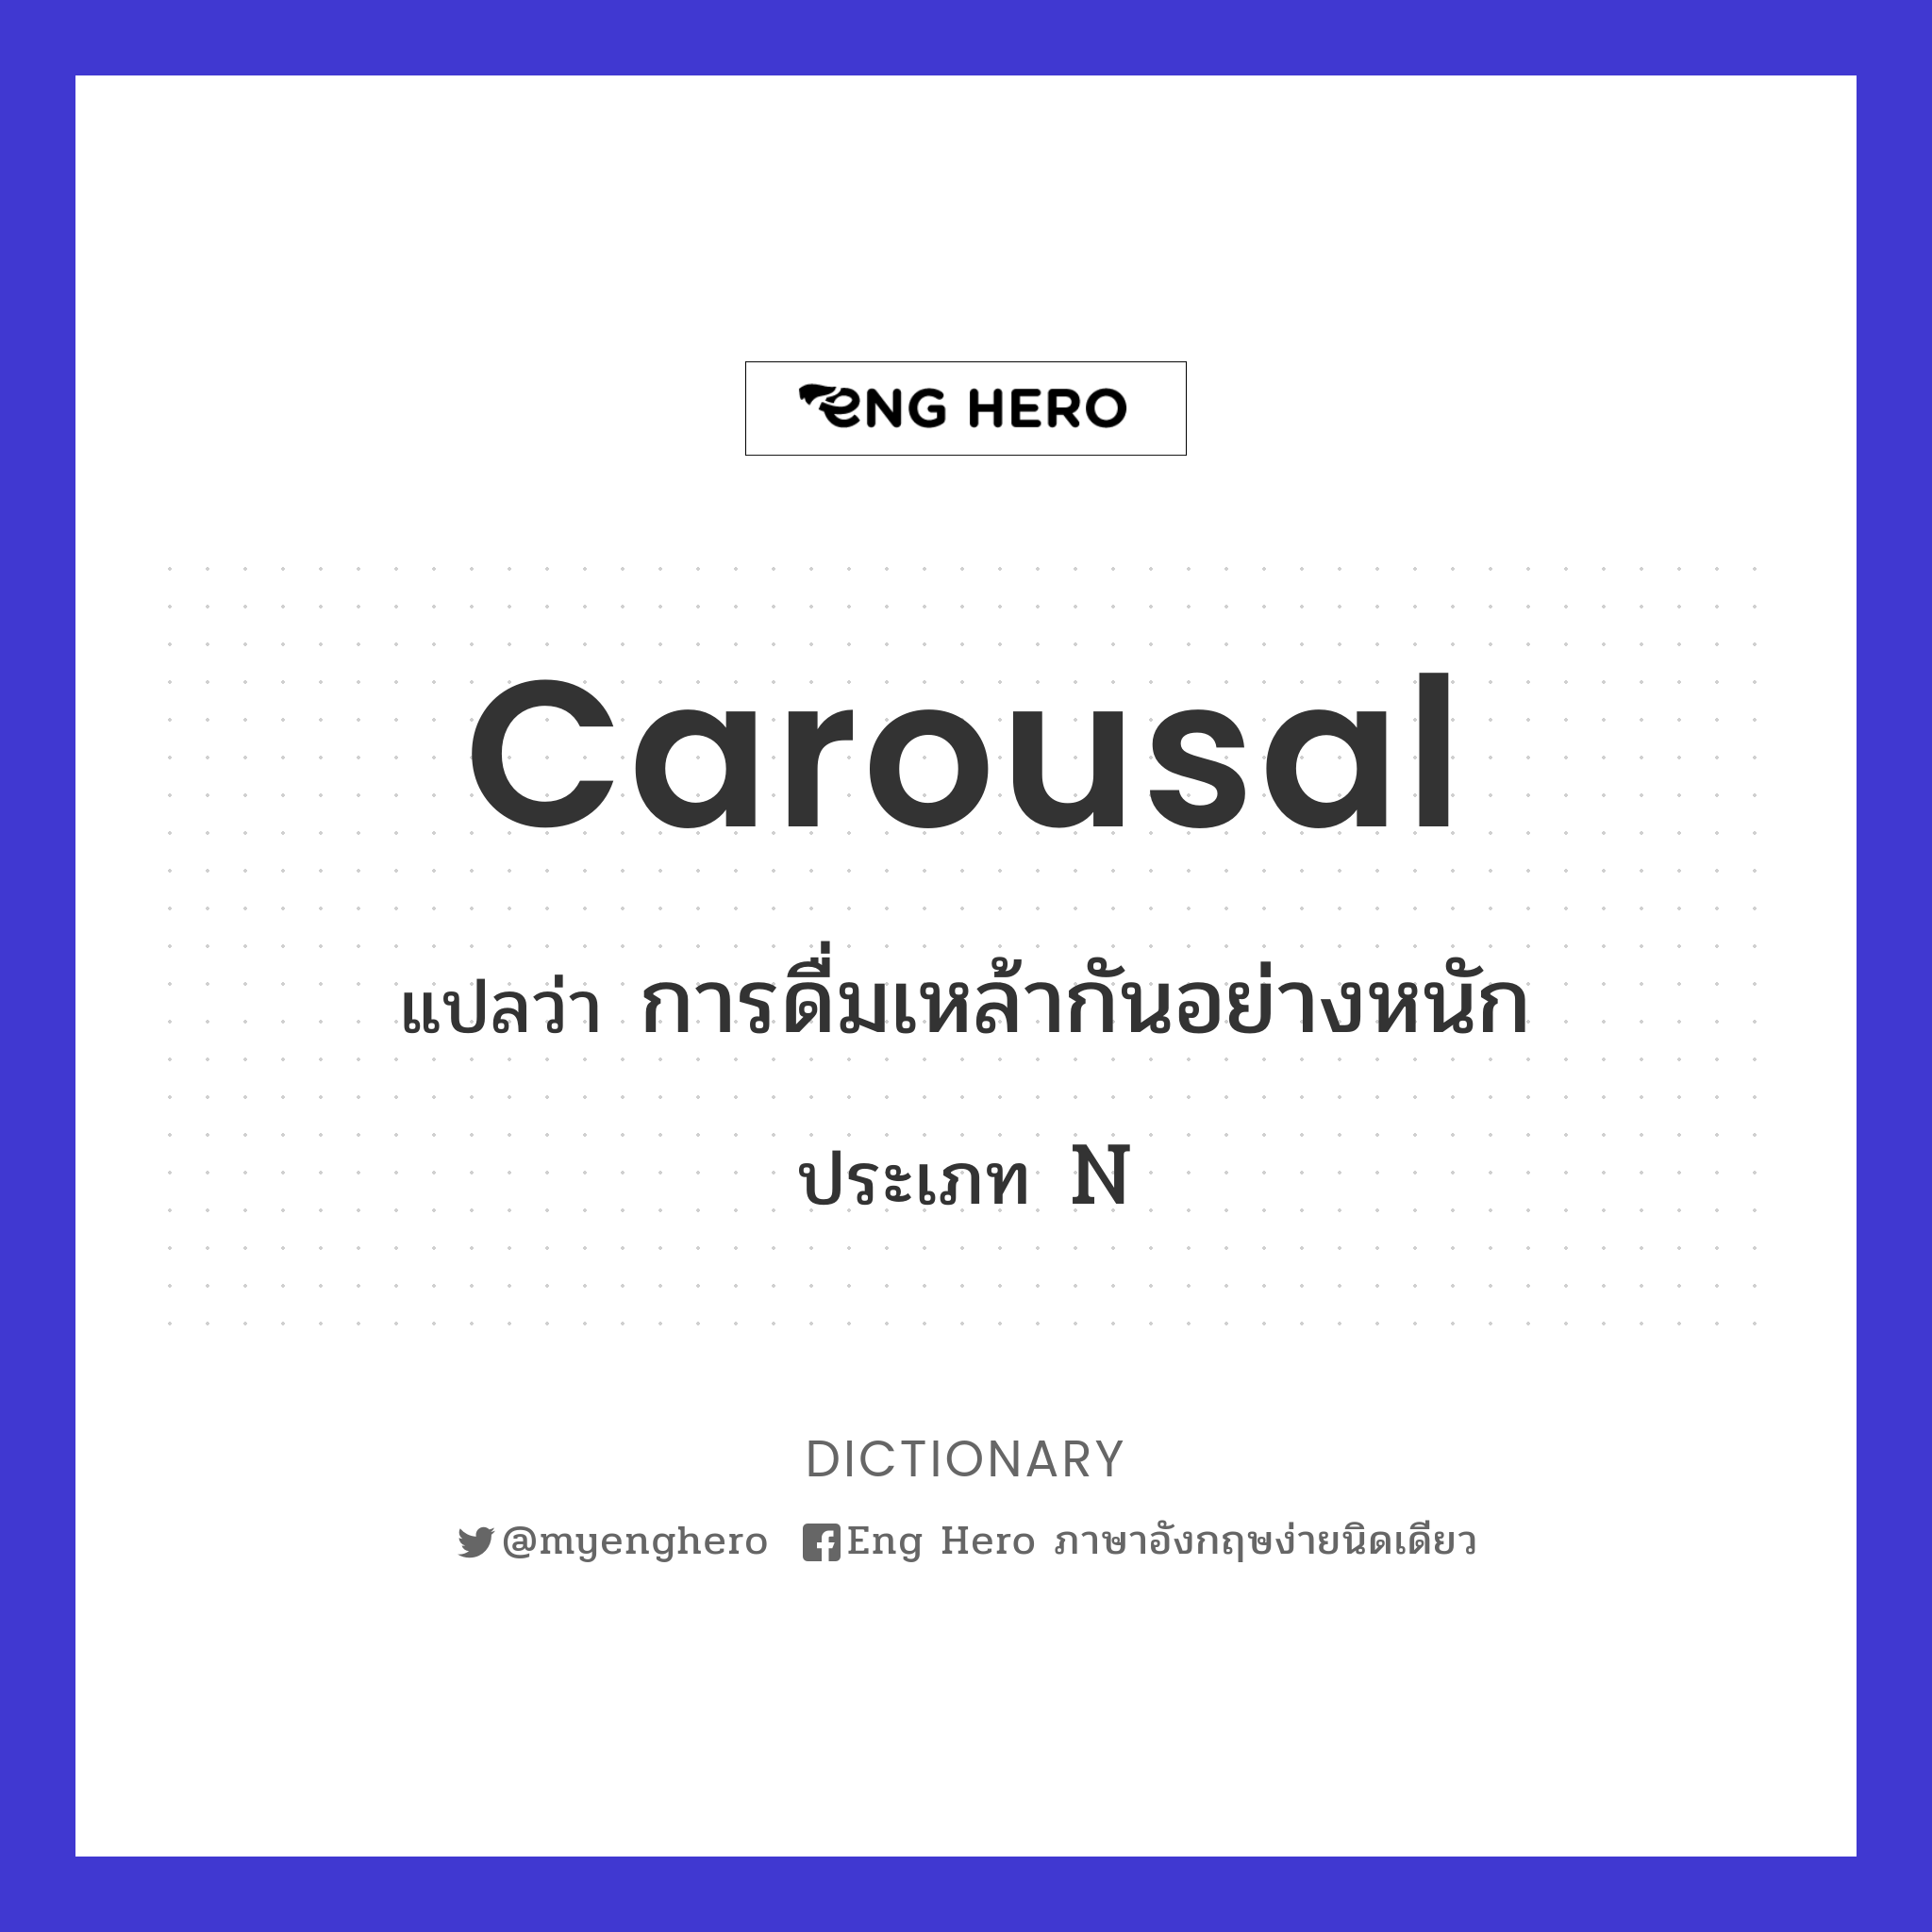 carousal